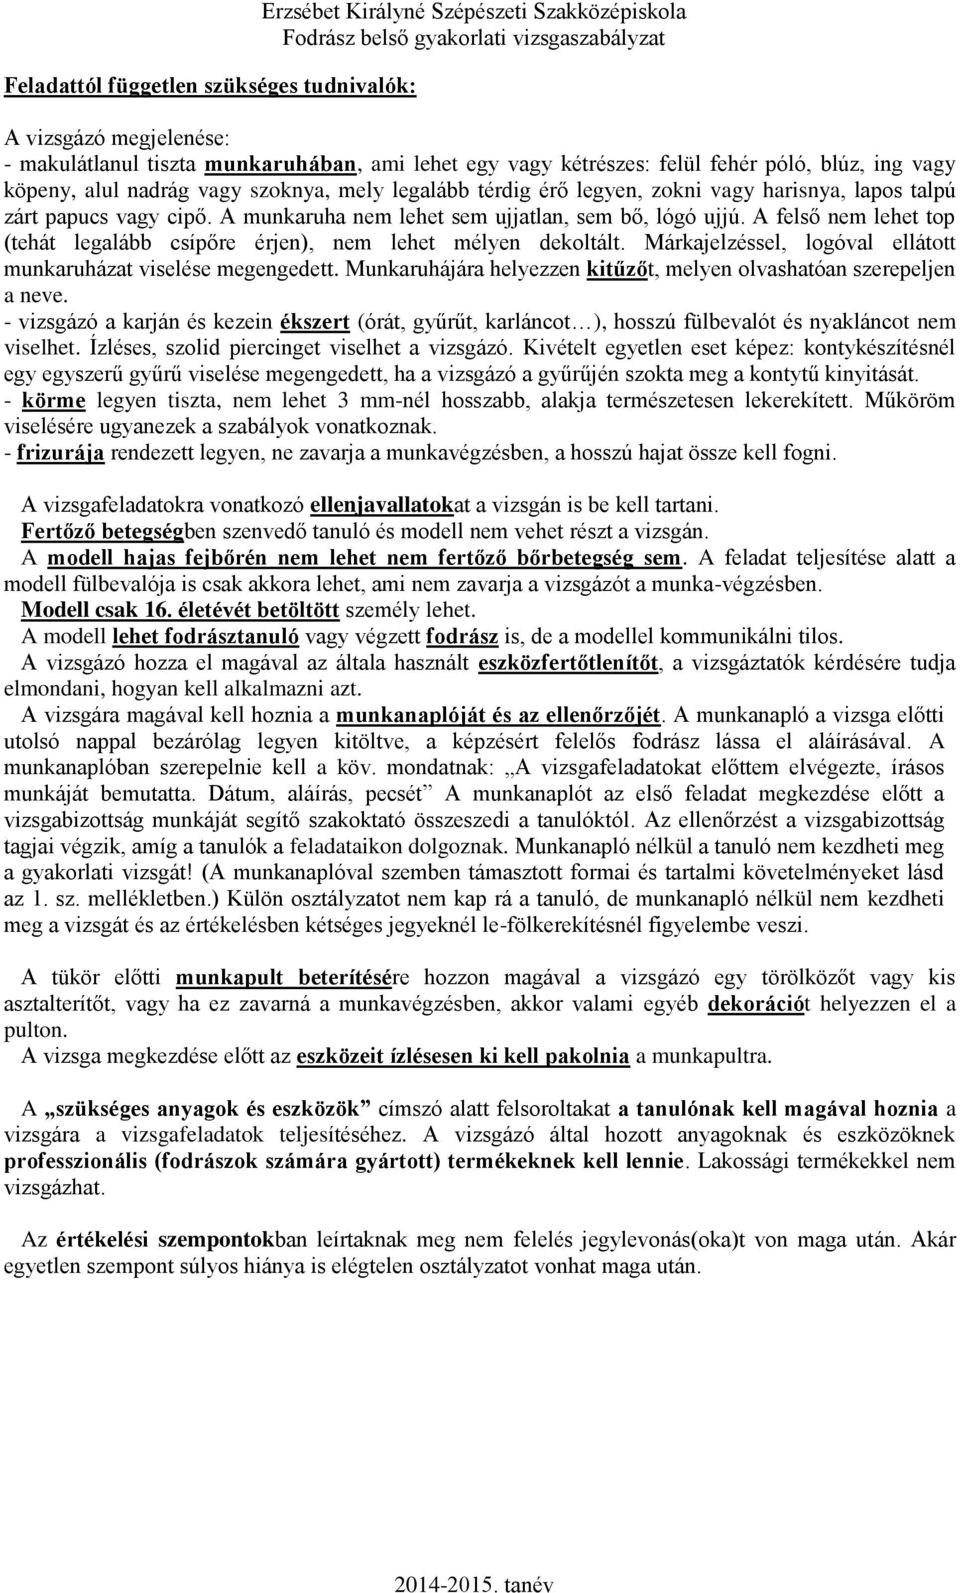 Fodrász gyakorlati vizsgaszabályzata - PDF Ingyenes letöltés